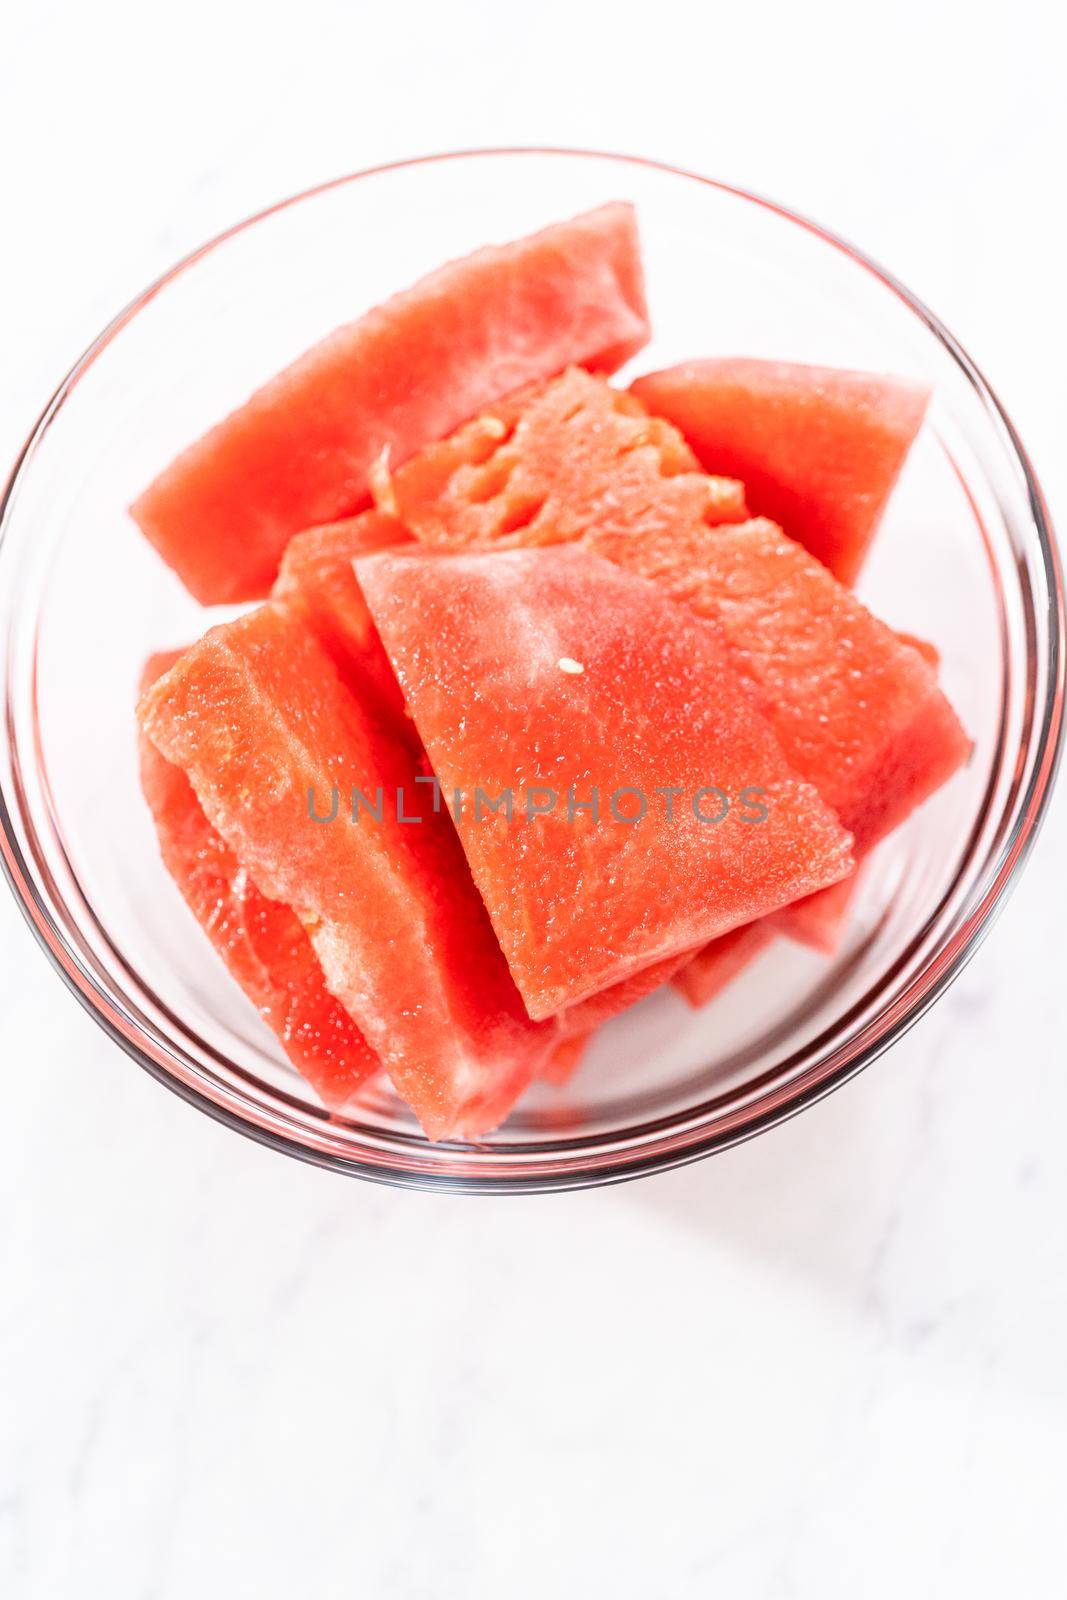 Watermelon margarita by arinahabich